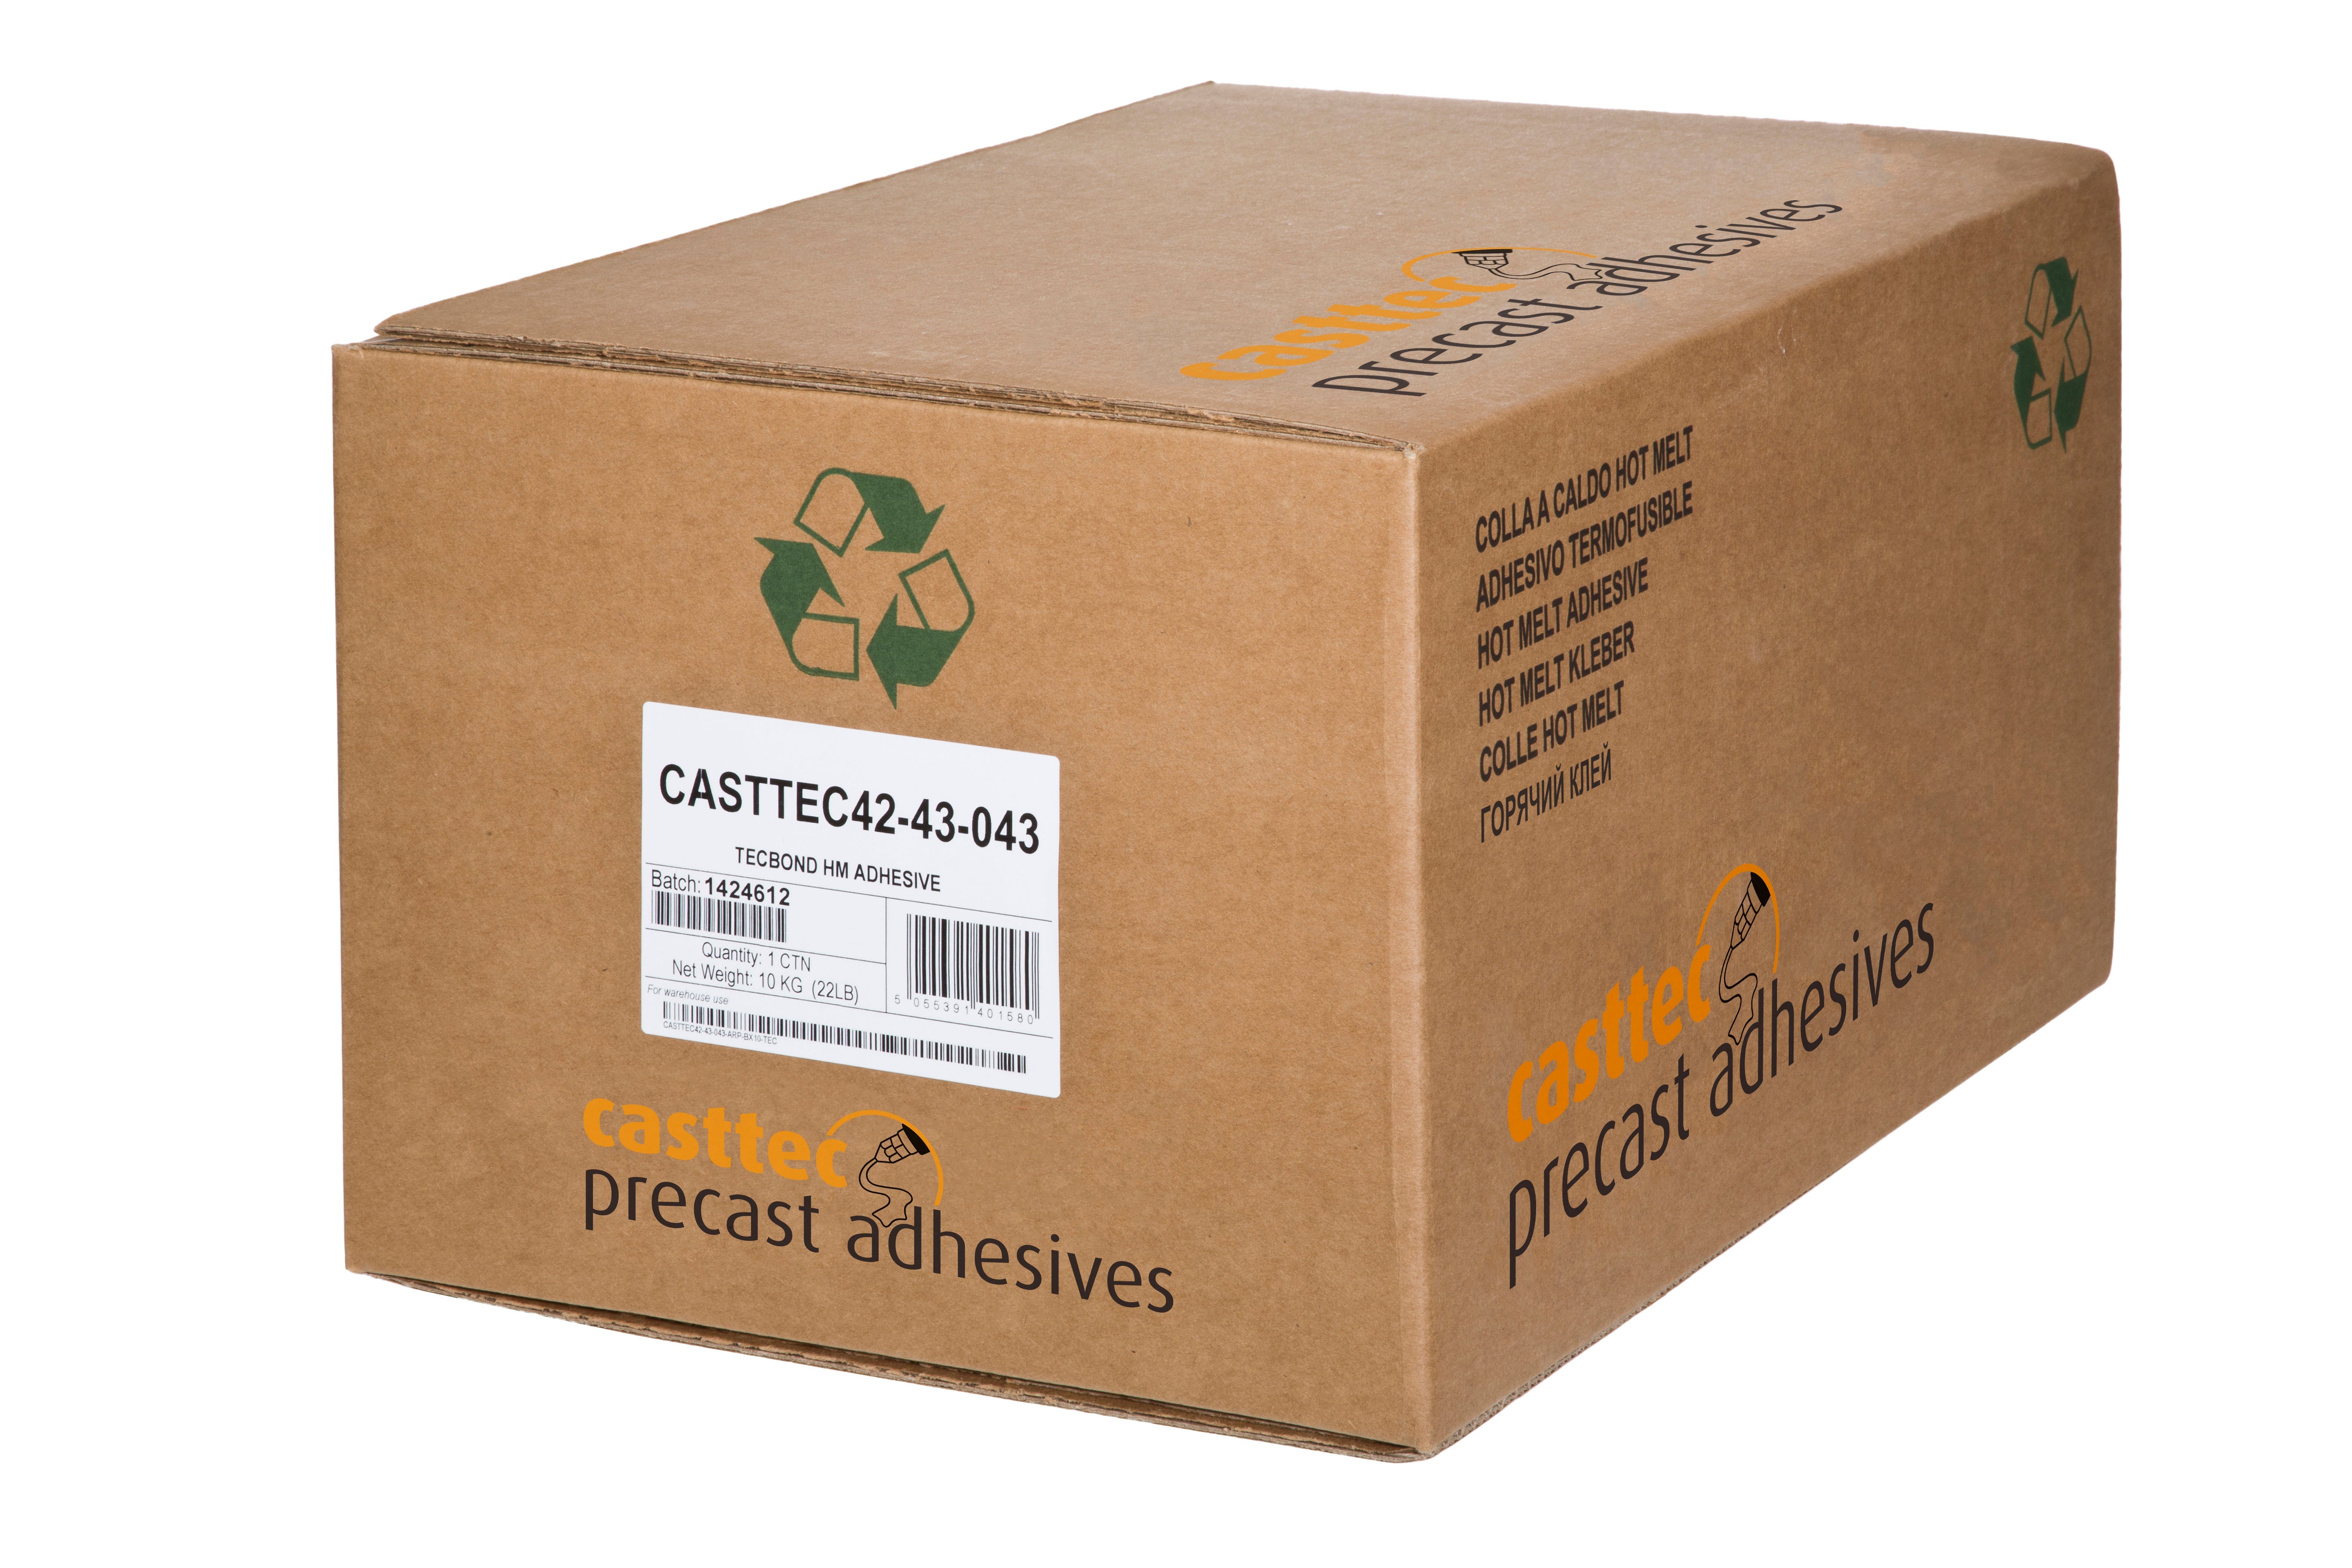 CASTTEC General Purpose 42-43, Easy Clean, Precast Adhesive